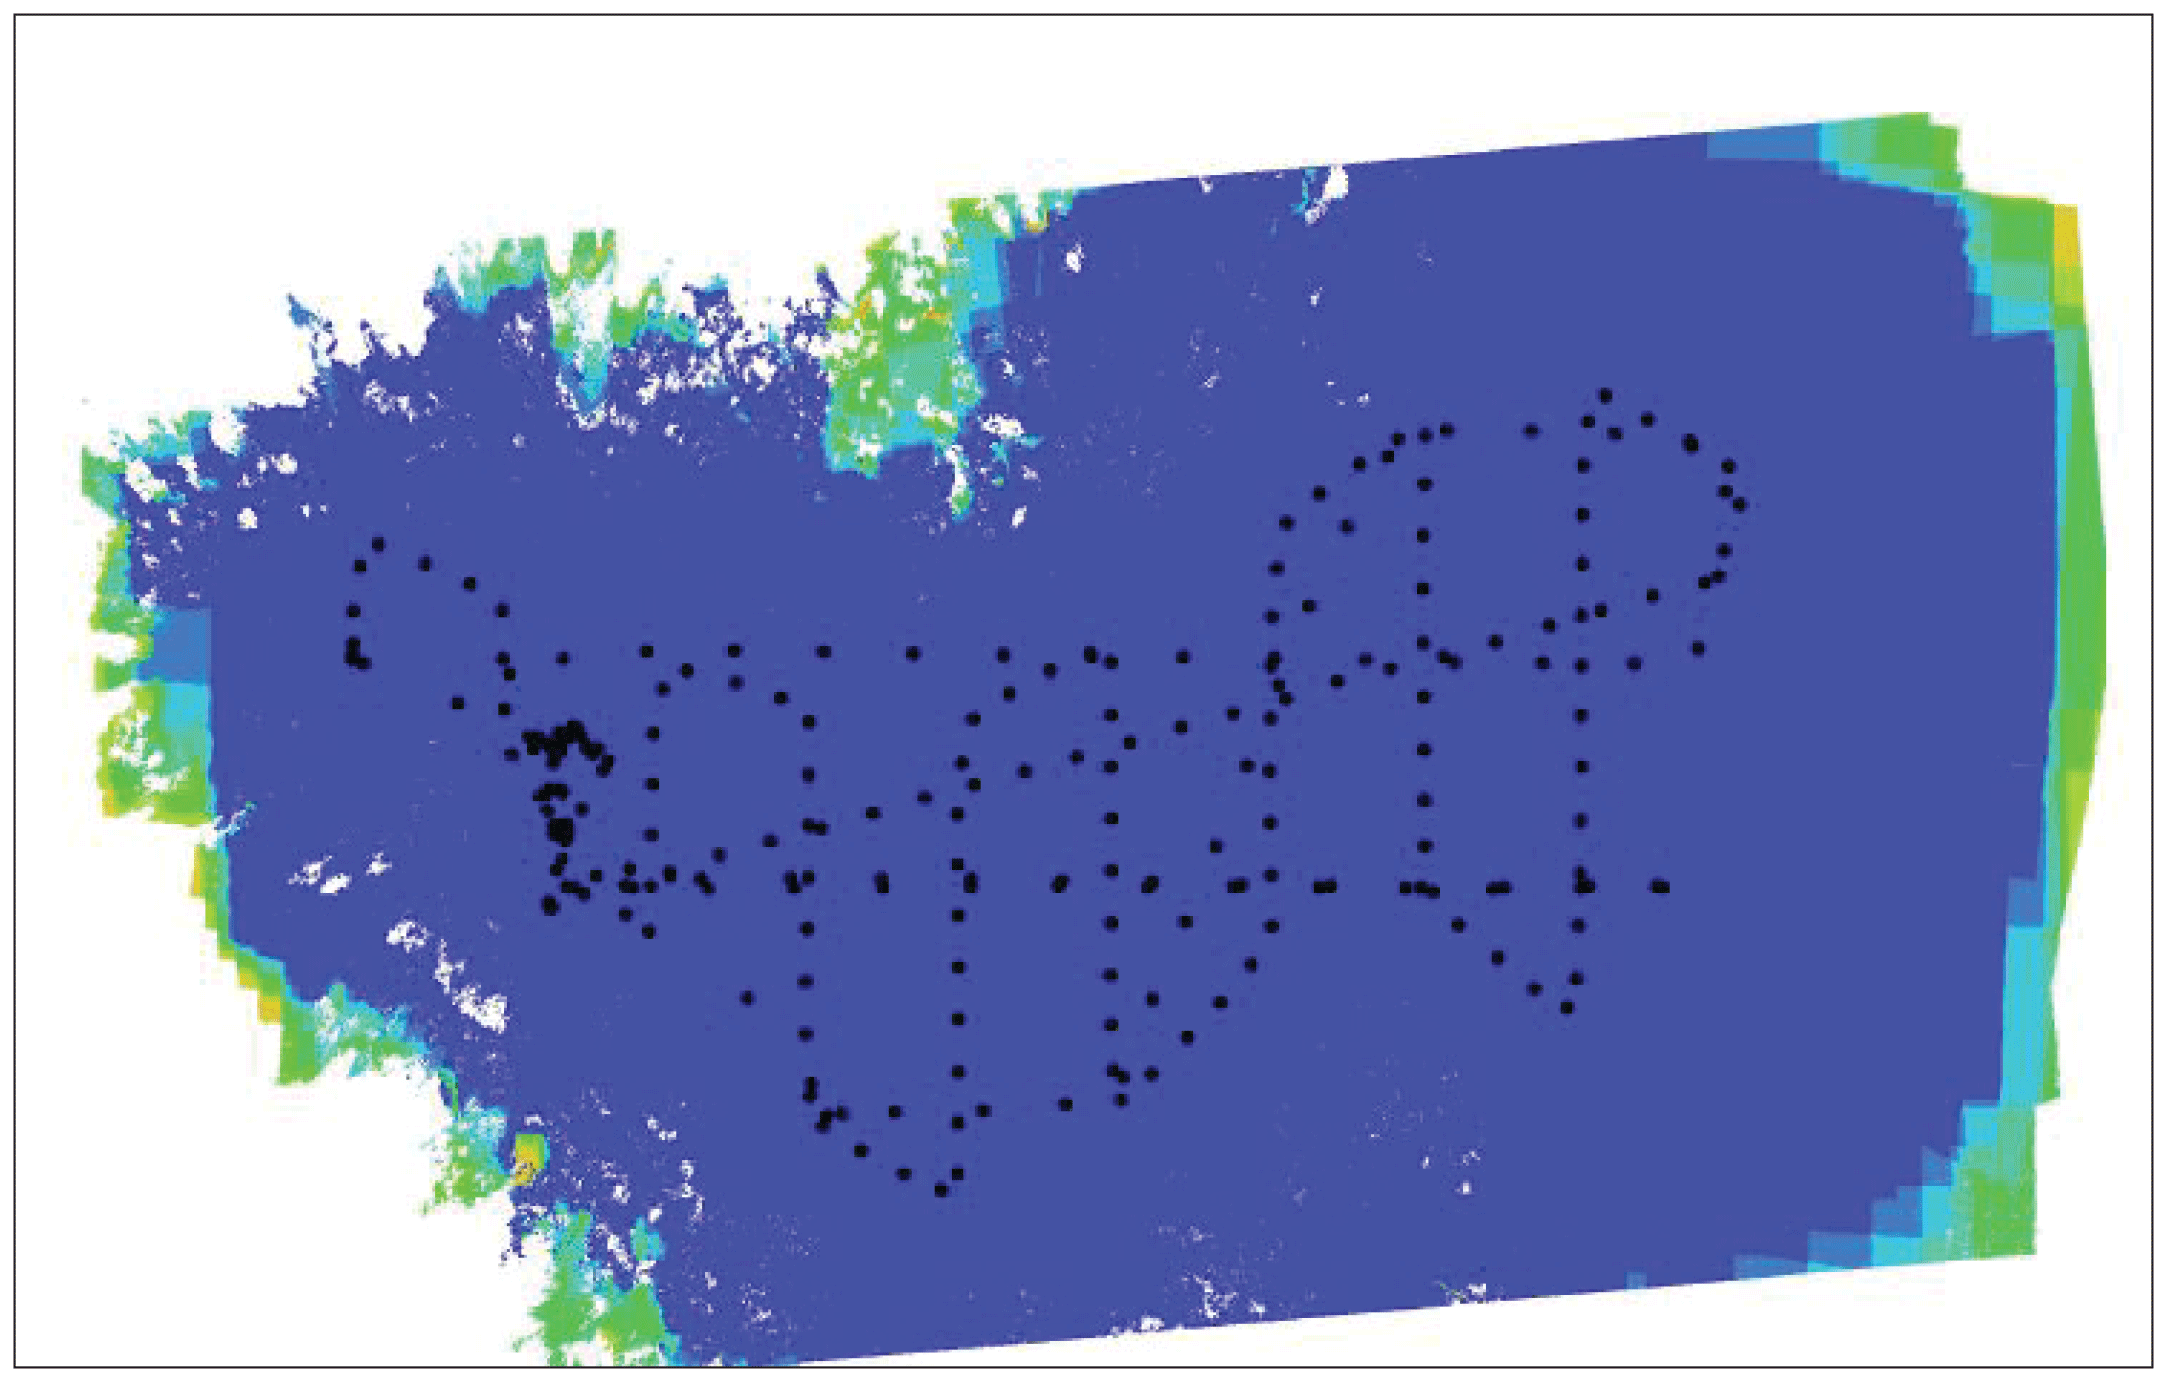 Flight pattern shown as dots inside a map area.